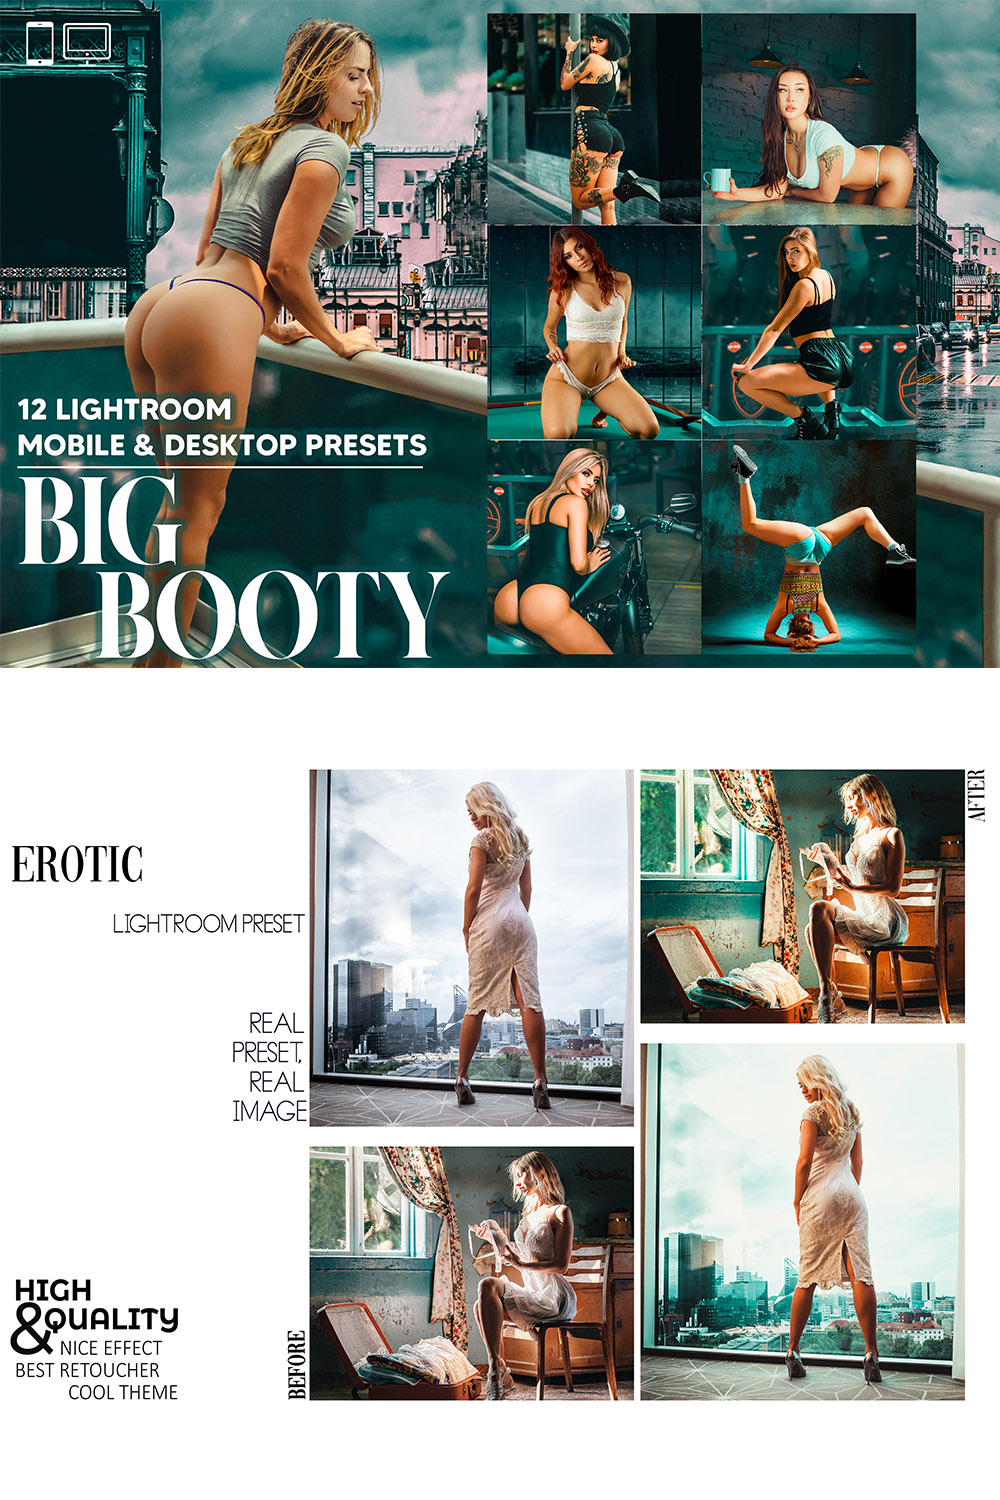 12 Big Booty Lightroom Presets, Girl Summer Mobile Preset, Bikini Desktop, Lifestyle Portrait Theme Instagram LR Filter DNG pinterest preview image.